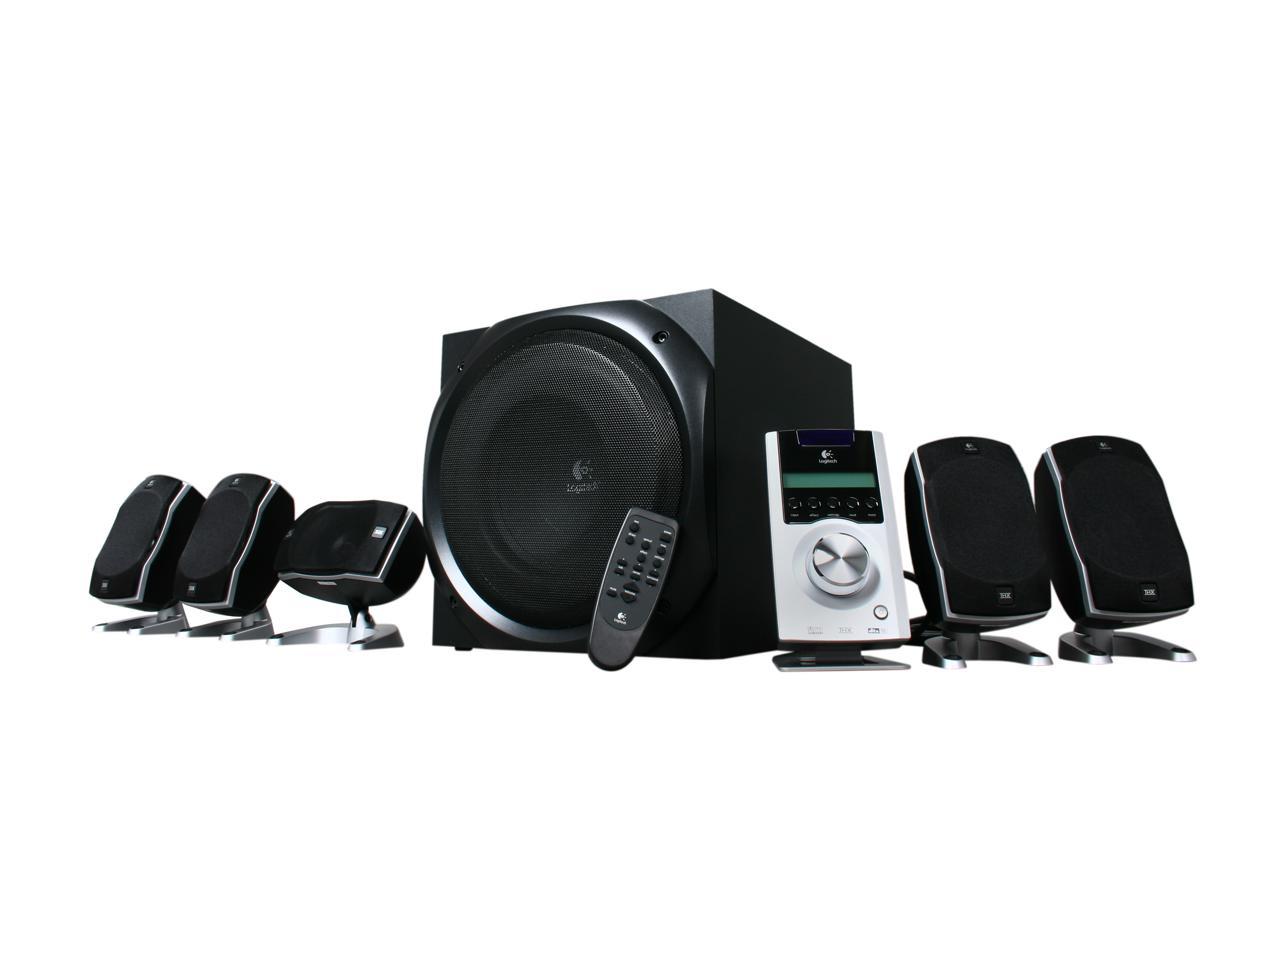 Bloemlezing wortel verkoper Open Box: Logitech Z-5500 5.1 Digital Speaker System - Newegg.com